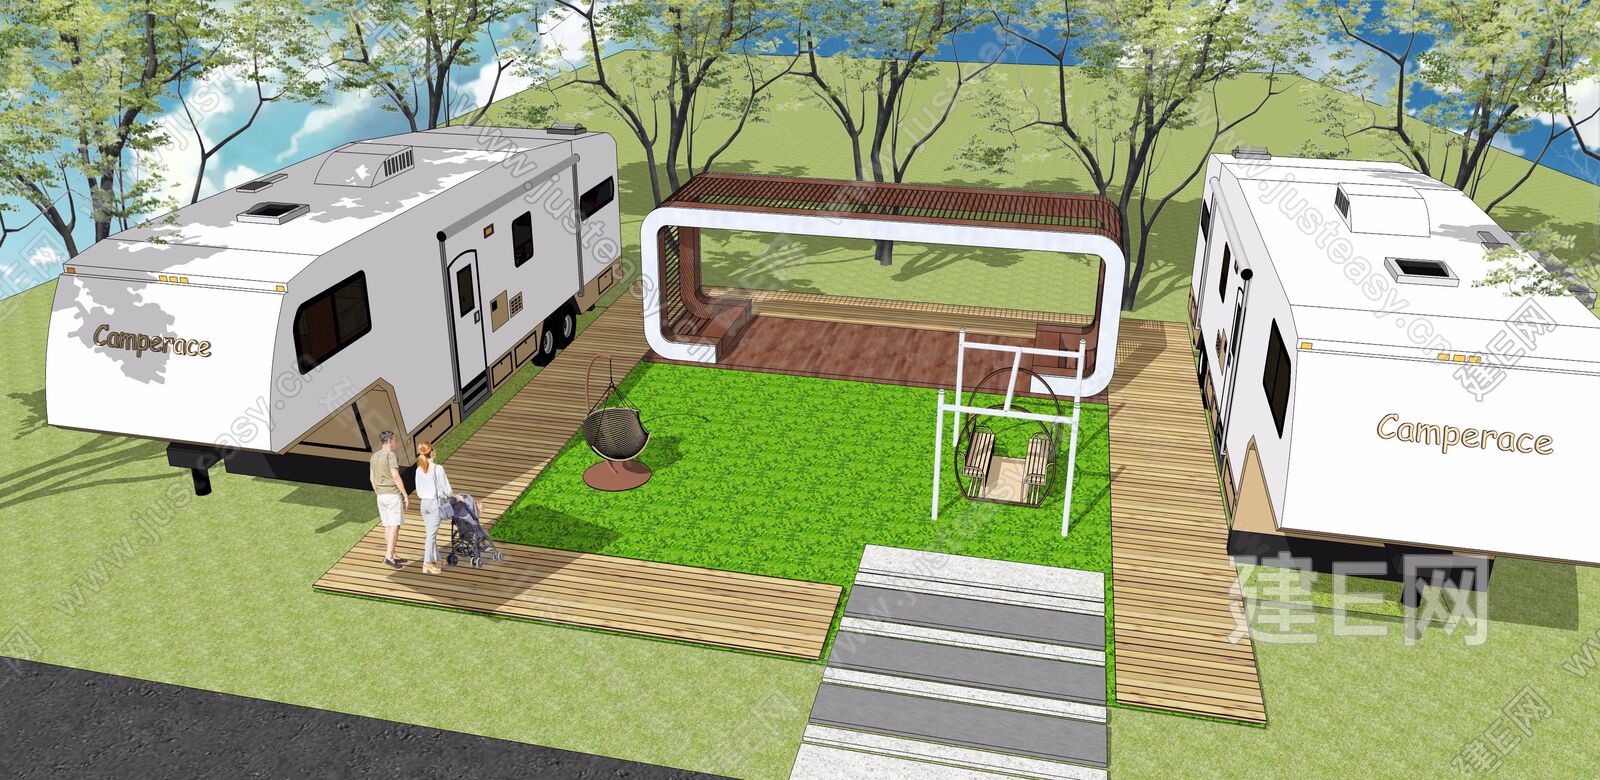 Rvbaba房车营地规划设计院——双鱼岛房车度假营地项目